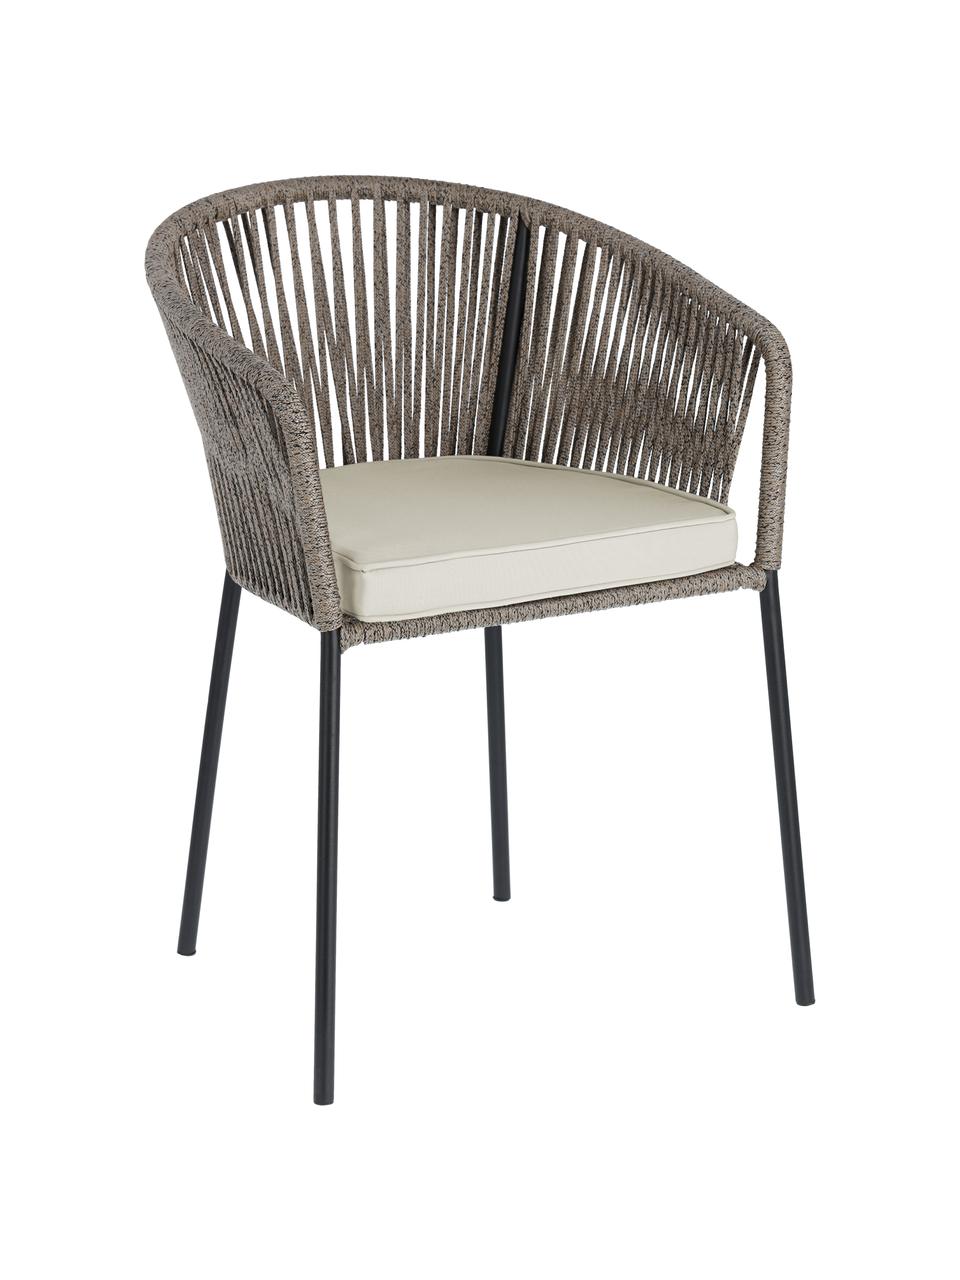 Záhradná stolička Yanet, Béžová, sivá, Š 56 x H 51 cm